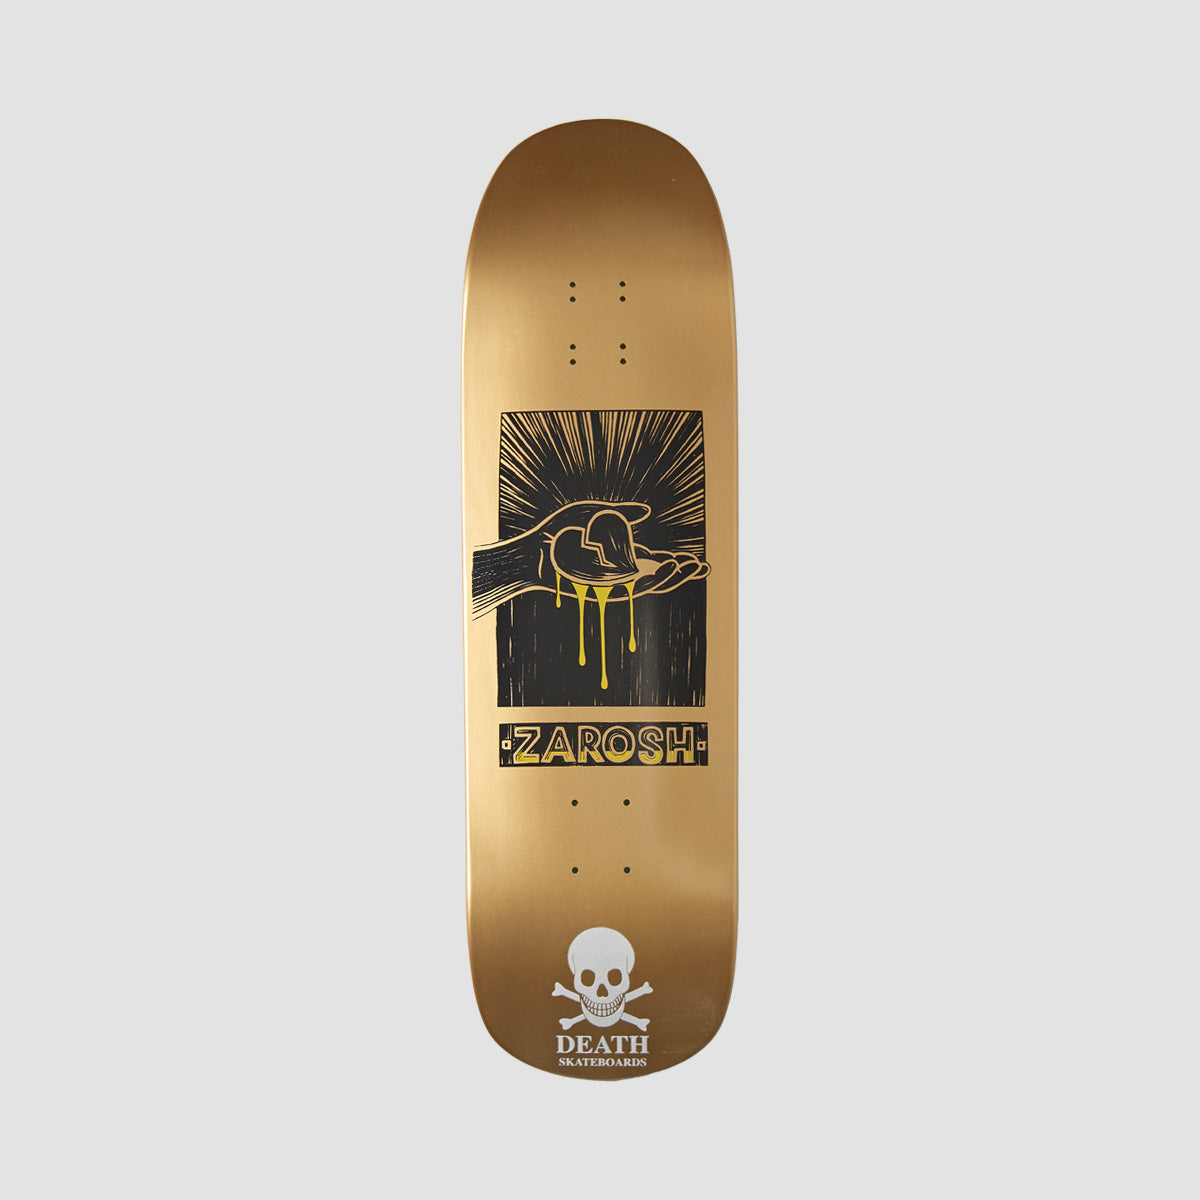 Death Zarosh Heart Hand Screened Pool Skateboard Deck Gold/White Skull - 9"